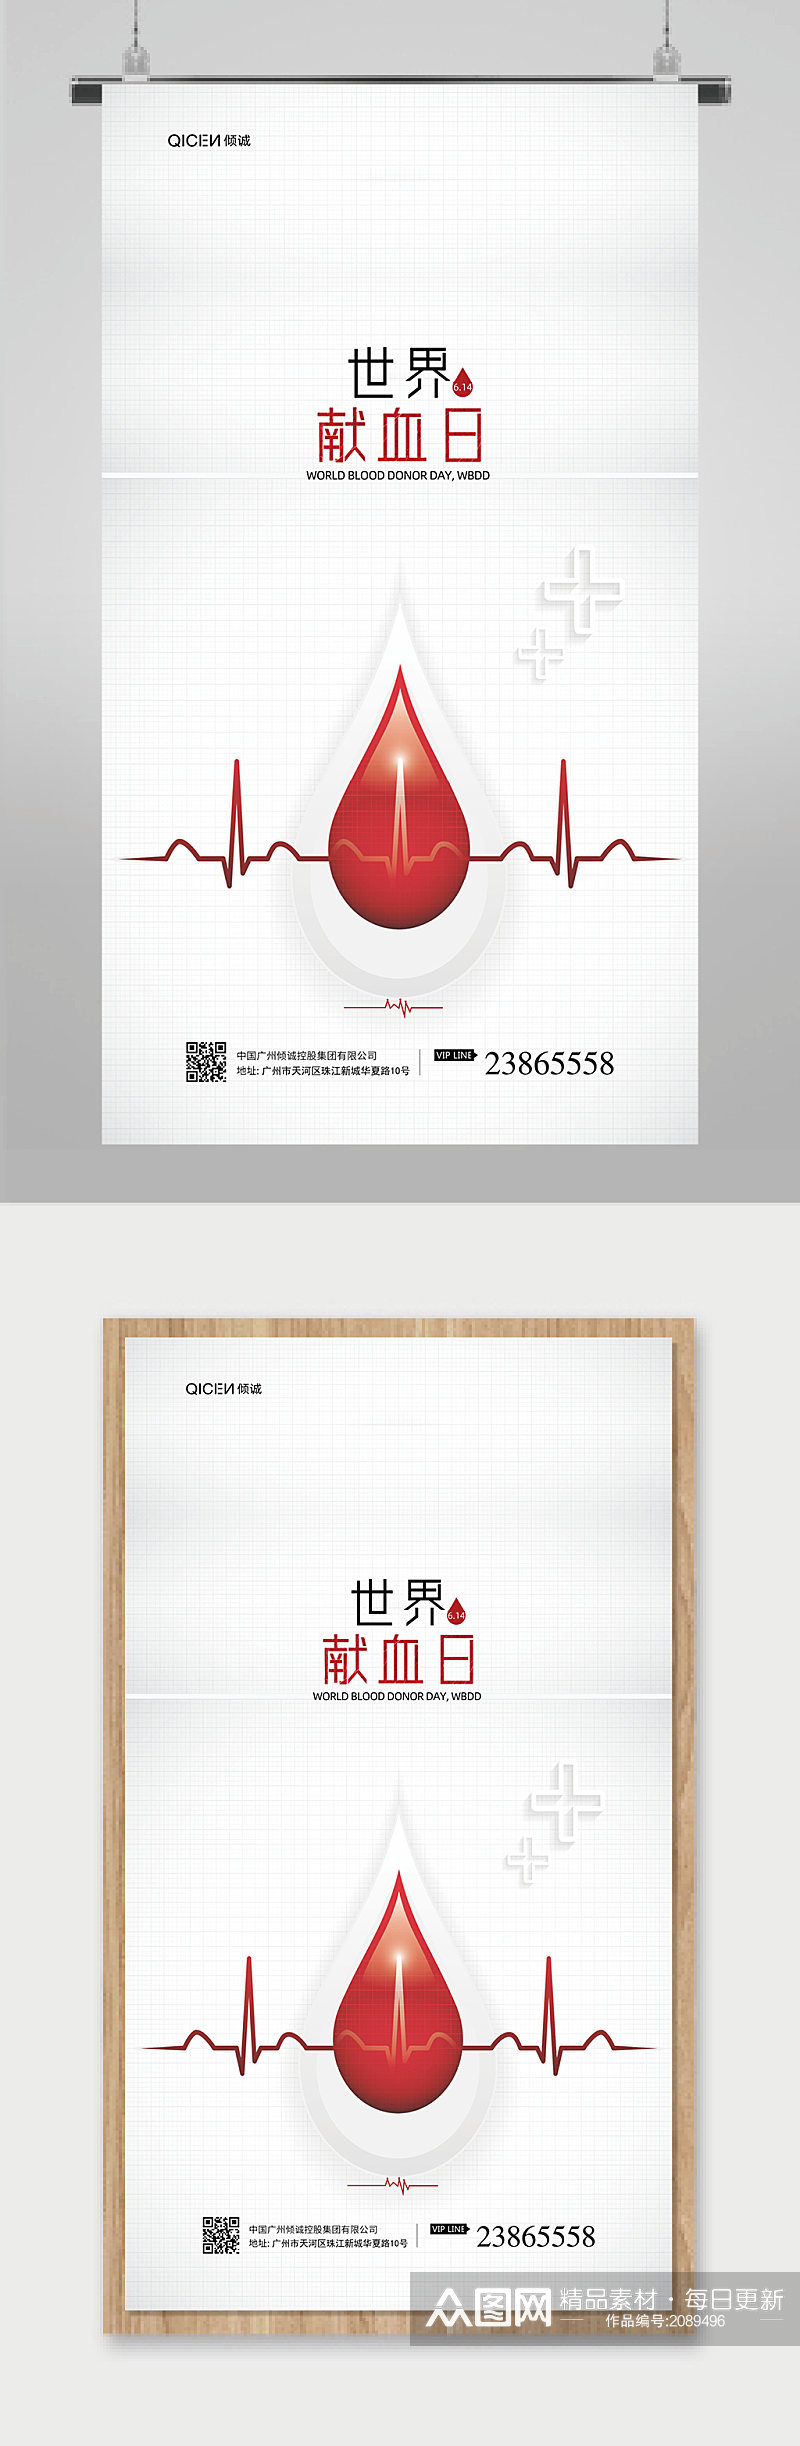 世界献血者日宣传海报素材